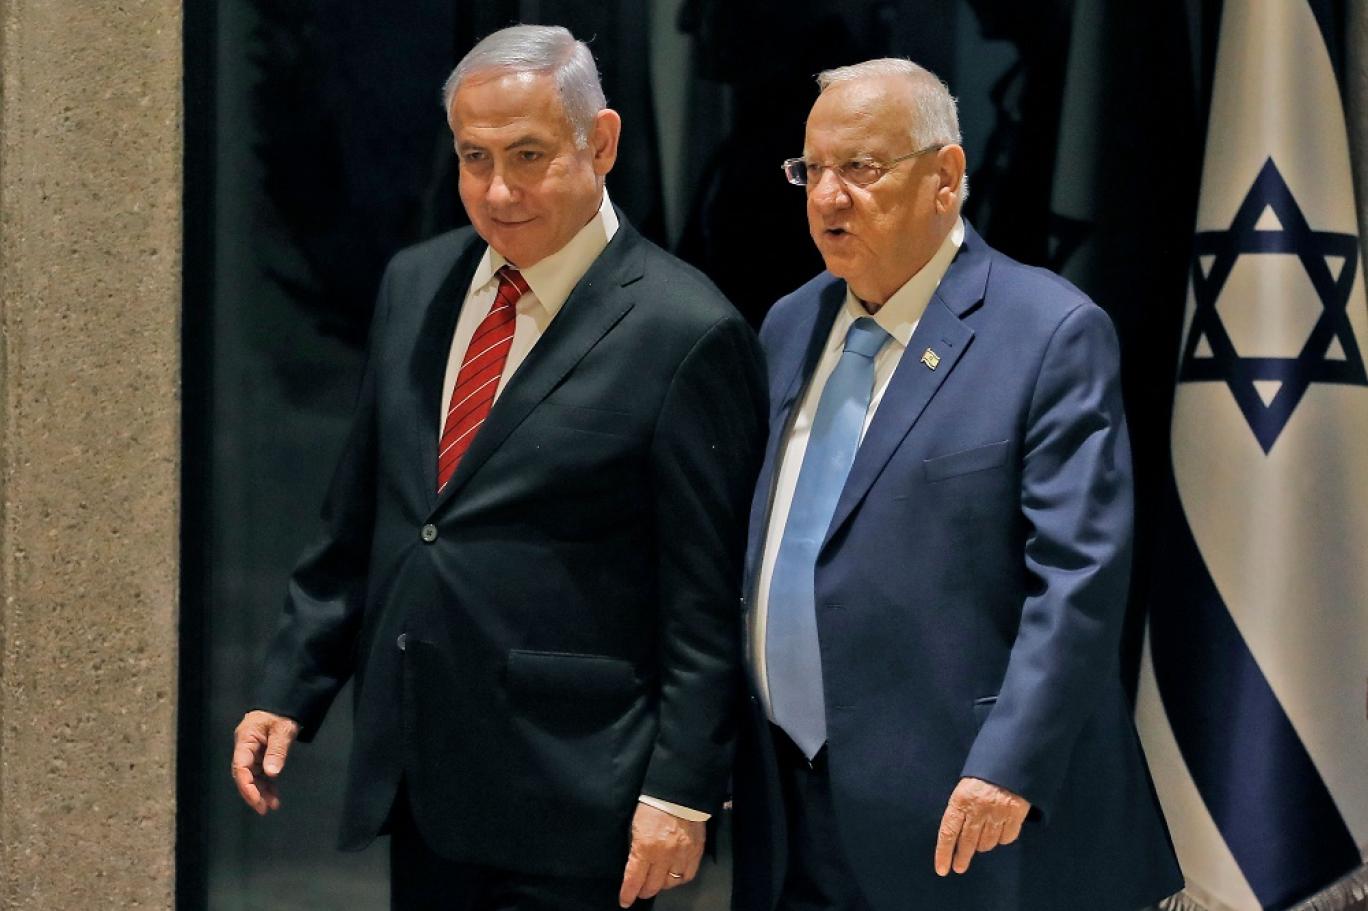 الرئيس الإسرائيلي يكلف نتنياهو تشكيل حكومة جديدة وغانتس يرفض المشاركة فيها | اندبندنت عربية